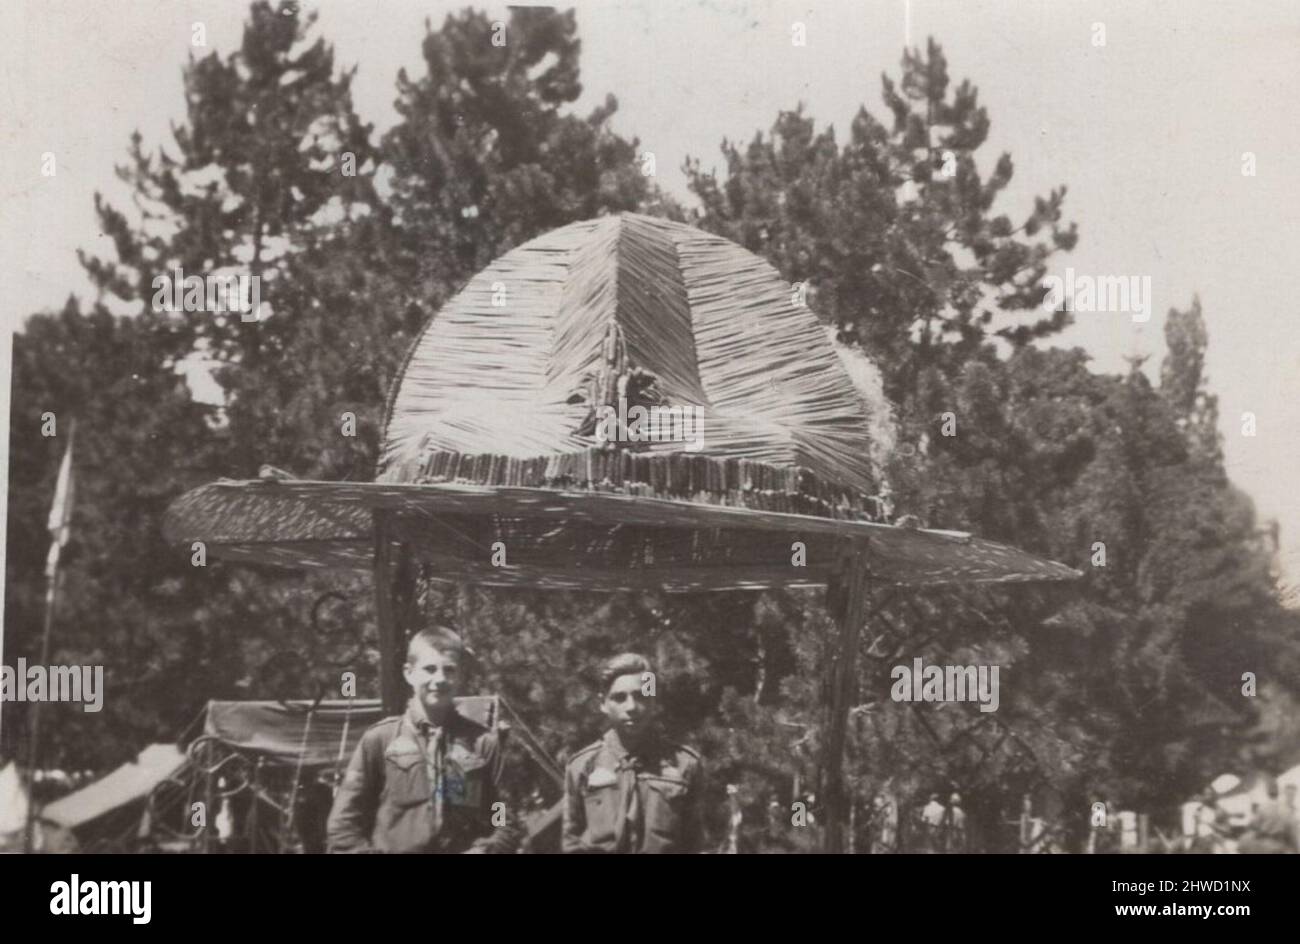 Archive historique image de jeunes garçons scouts de WO qui sont debout devant un casque de pième massif avec le symbole du Scoutisme peut-être au Jamboree Scout mondial 1933 en Hongrie, Gödöllő. Banque D'Images